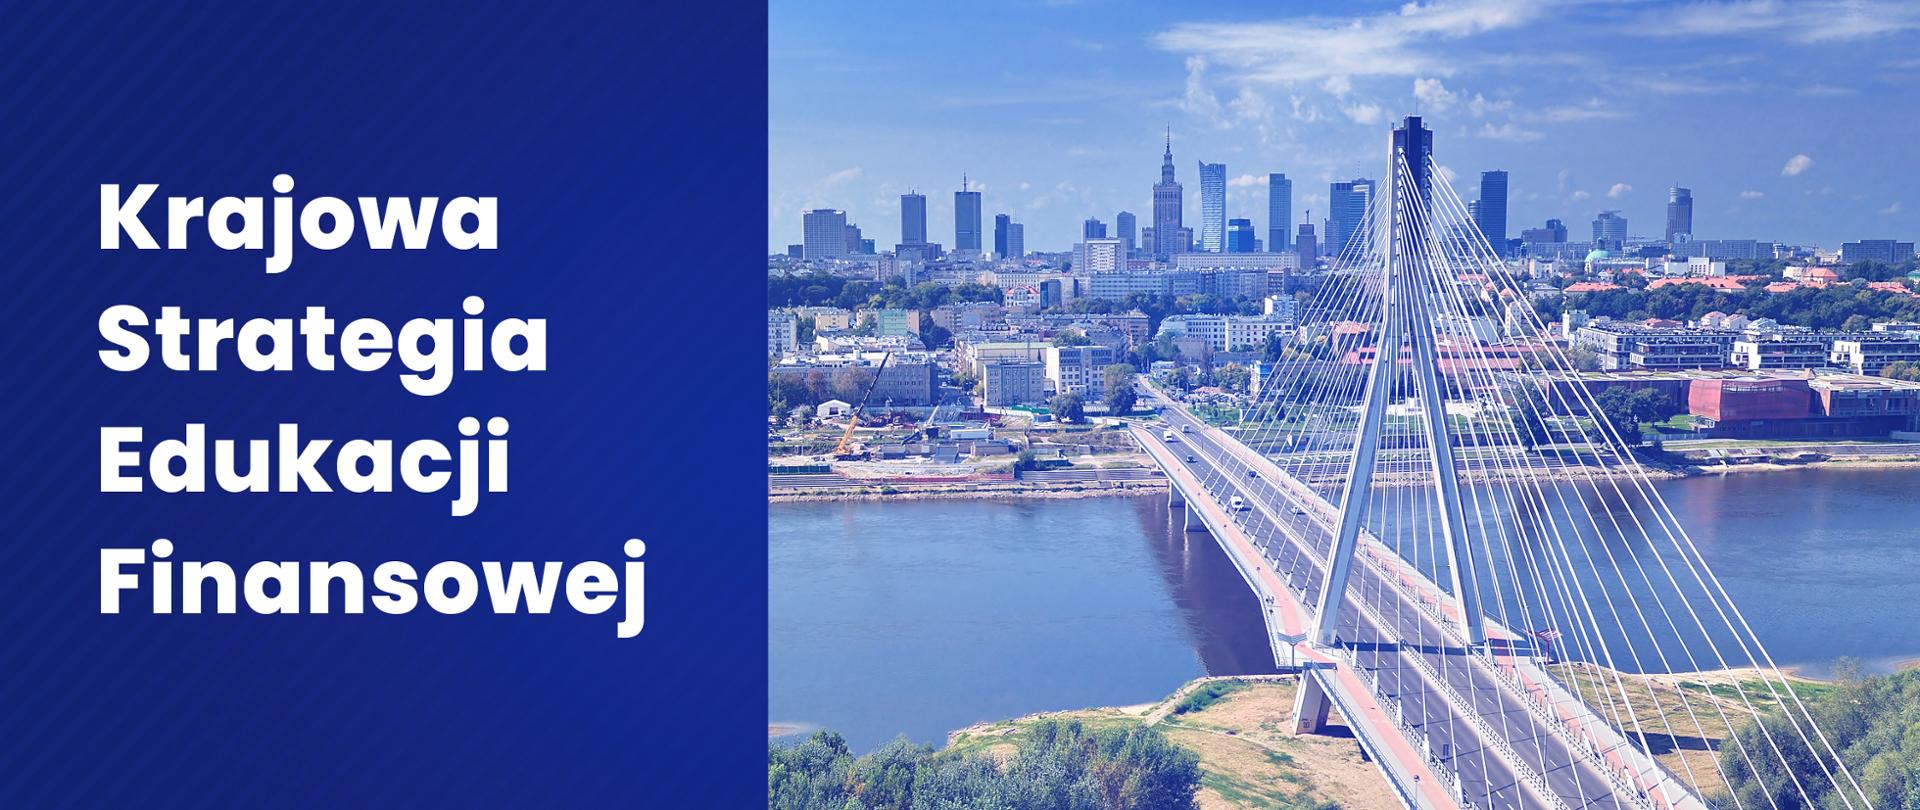 Panorama Warszawy i napis Krajowa Strategia Edukacji Finansowej